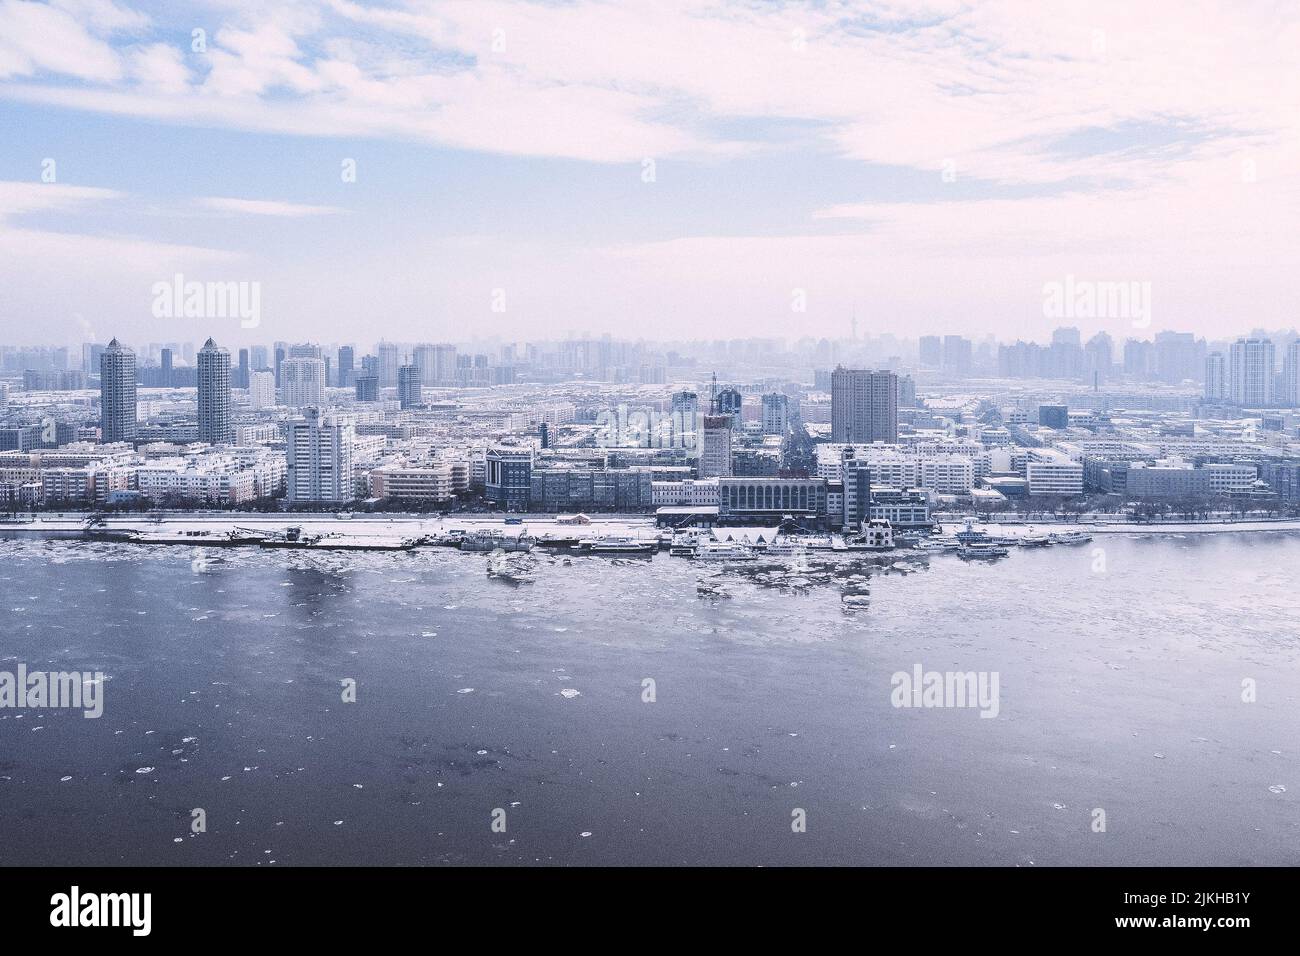 Una bella vista di una città innevata con barche in un lago ghiacciato Foto Stock